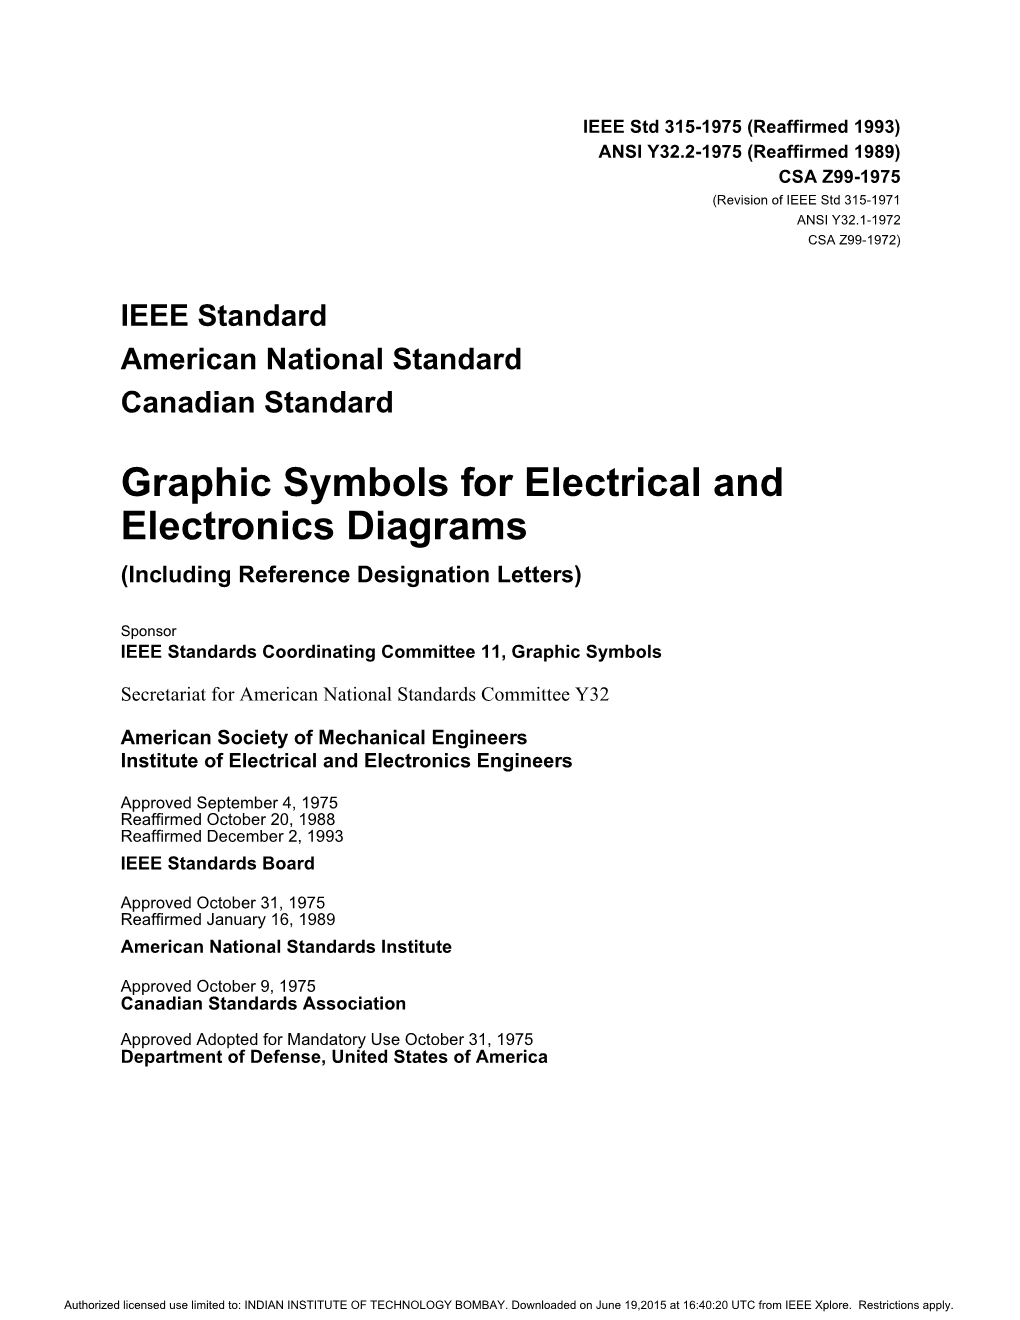 IEEE Std 315-1975 (Reaffirmed 1993) ANSI Y32.2-1975 (Reaffirmed 1989) CSA Z99-1975 (Revision of IEEE Std 315-1971 ANSI Y32.1-1972 CSA Z99-1972)